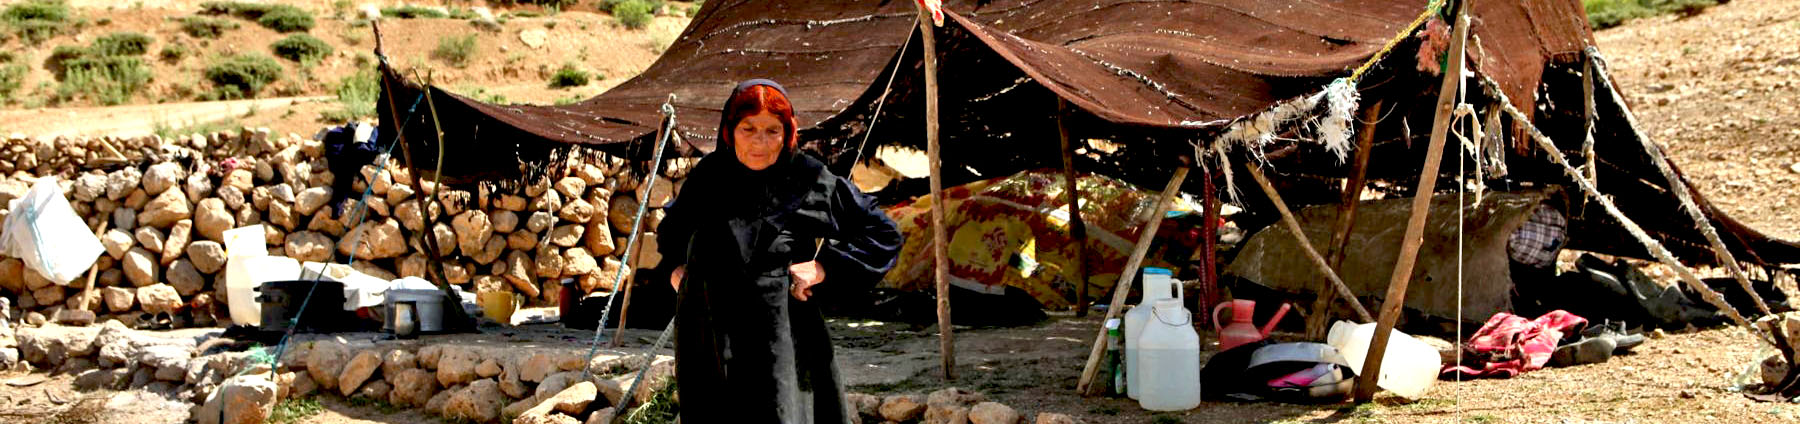 Iran nomads tour